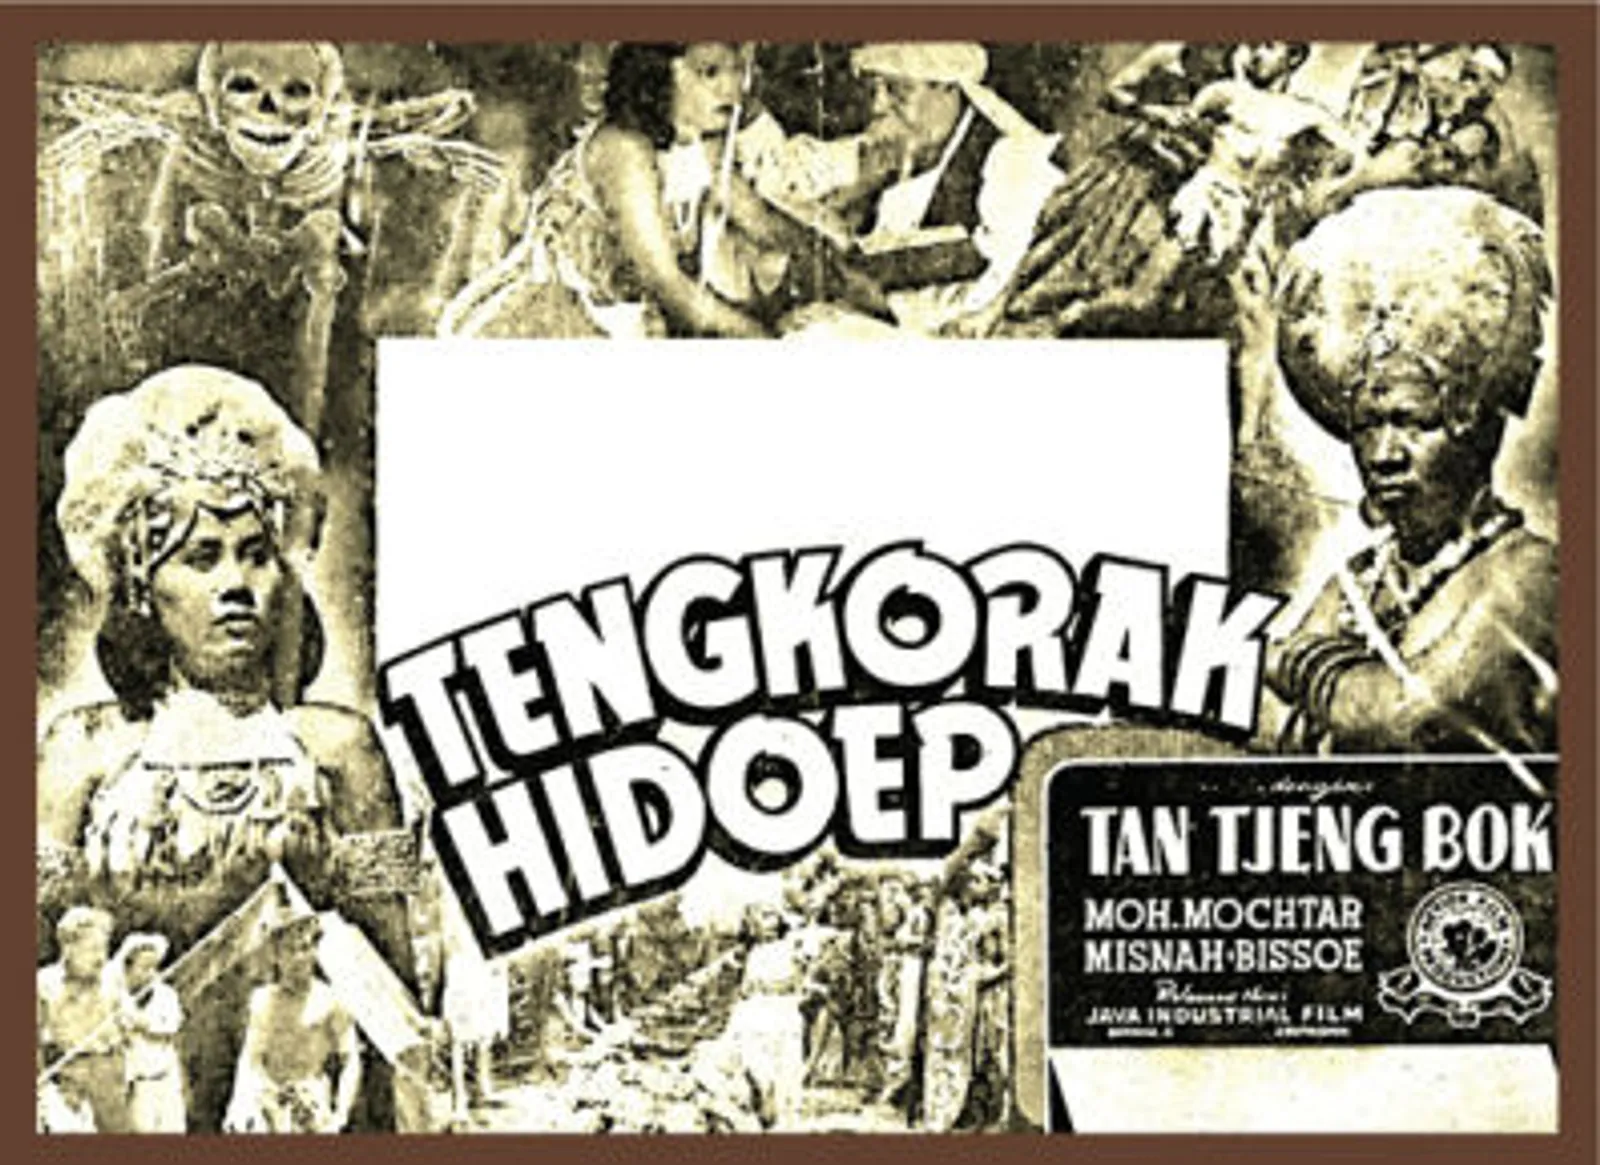 Sejarah Film Horor Indonesia: Dari Hindia Belanda Hingga Masa Kini